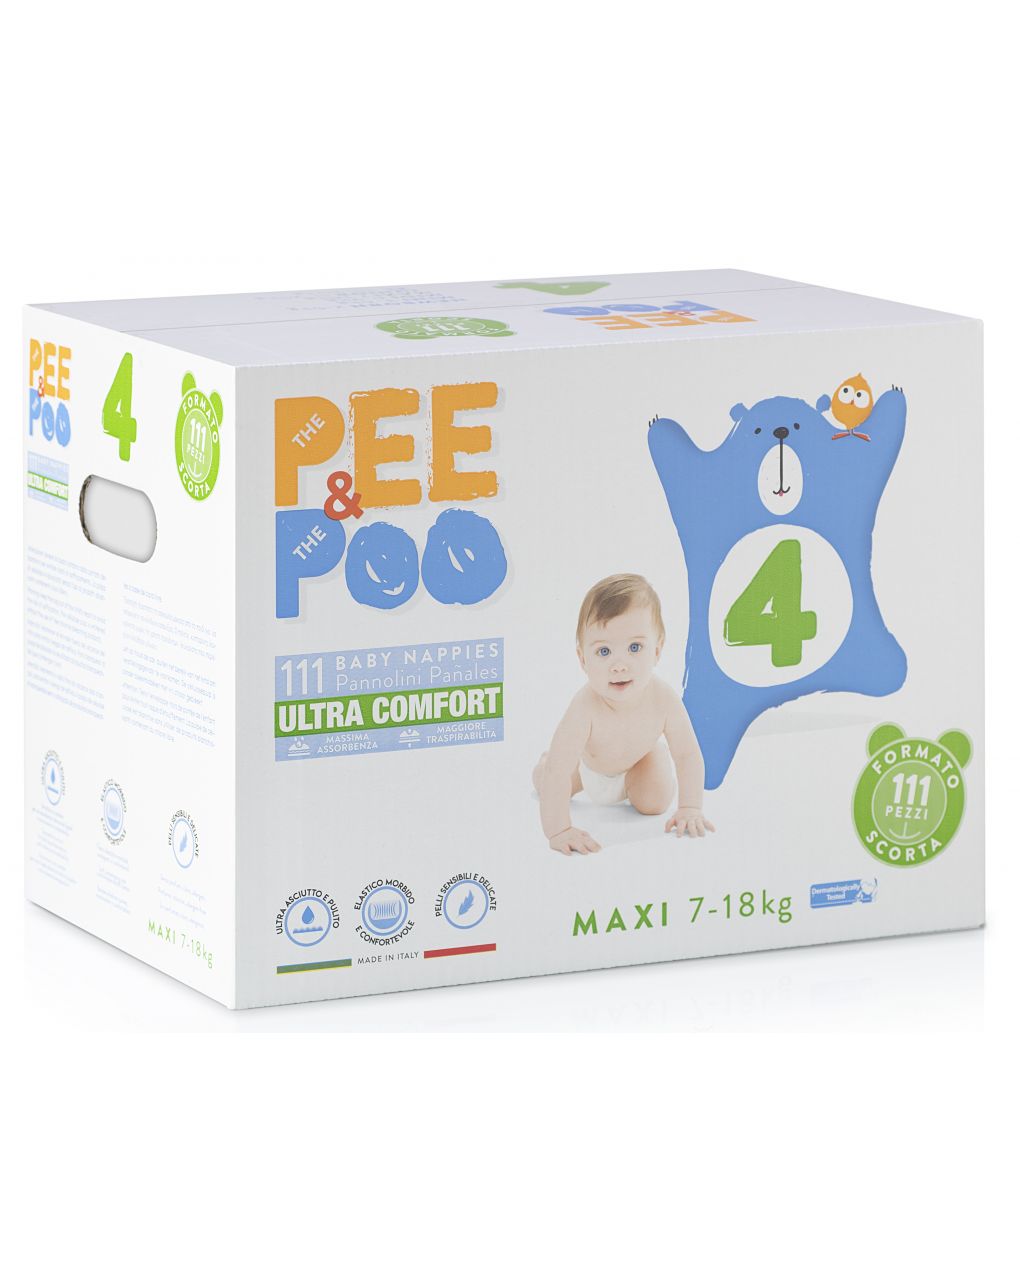 Pee&poo - jumbo maxi tg4 111 pz - The Pee & The Poo